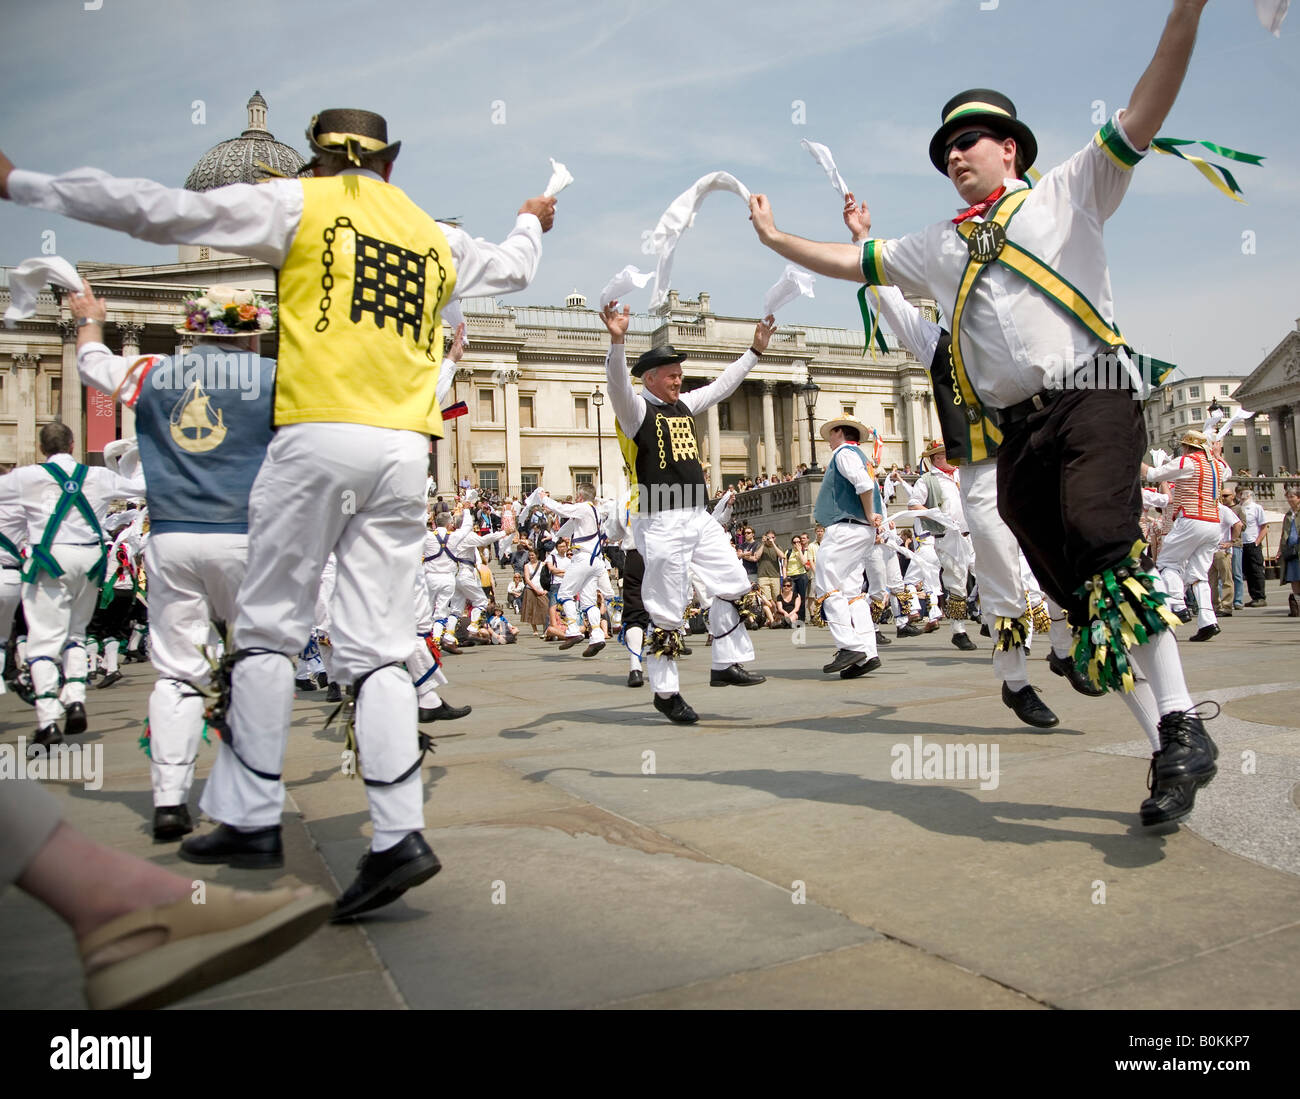 La journée annuelle de Westminster Danse 10 05 08 à Trafalgar sqaure London UK Banque D'Images